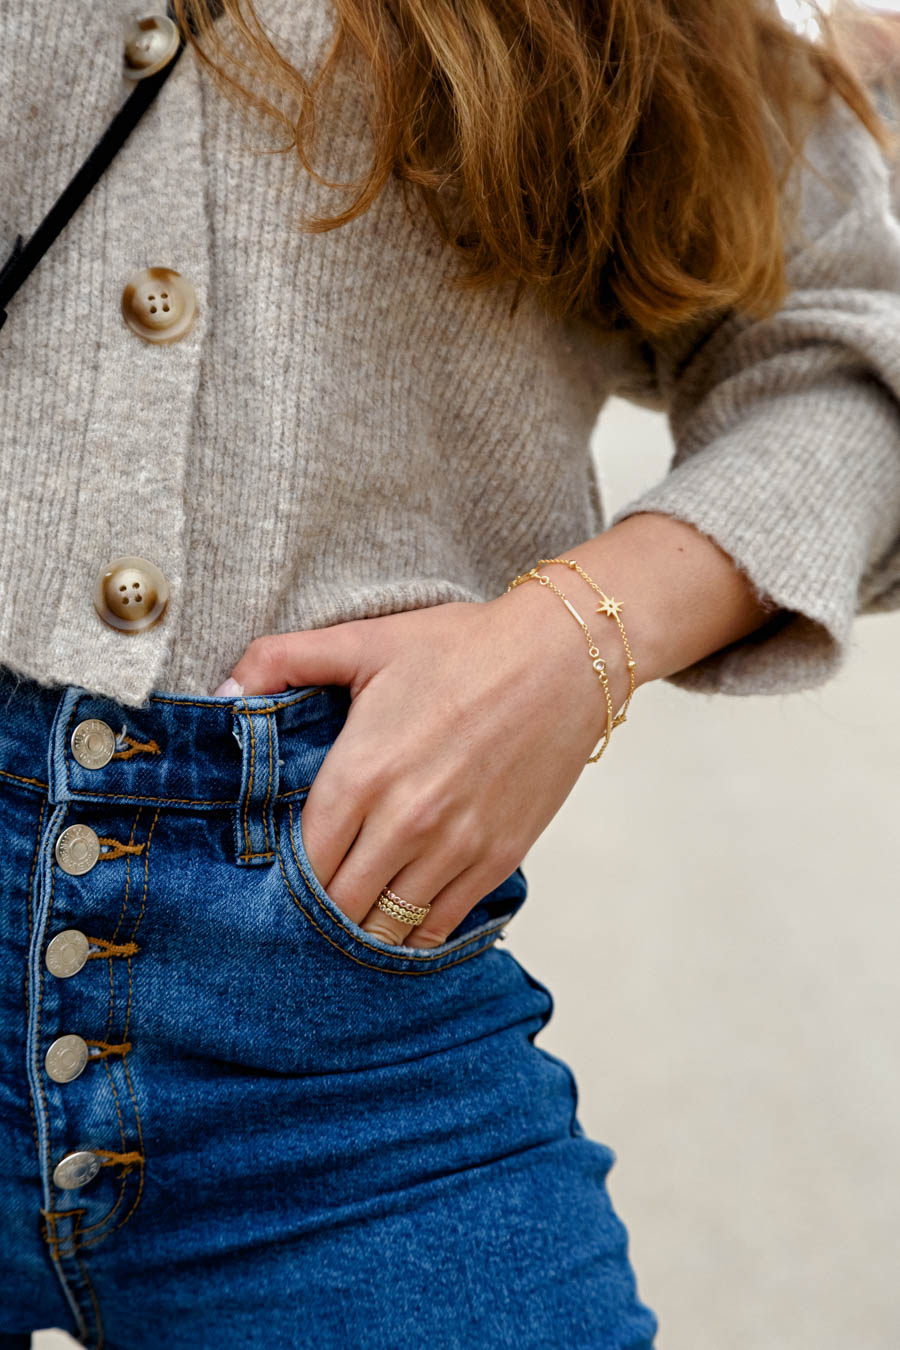 buenaletra joyas anillos pendientes pulseras collares colgantes oro plata embajadora tienda online